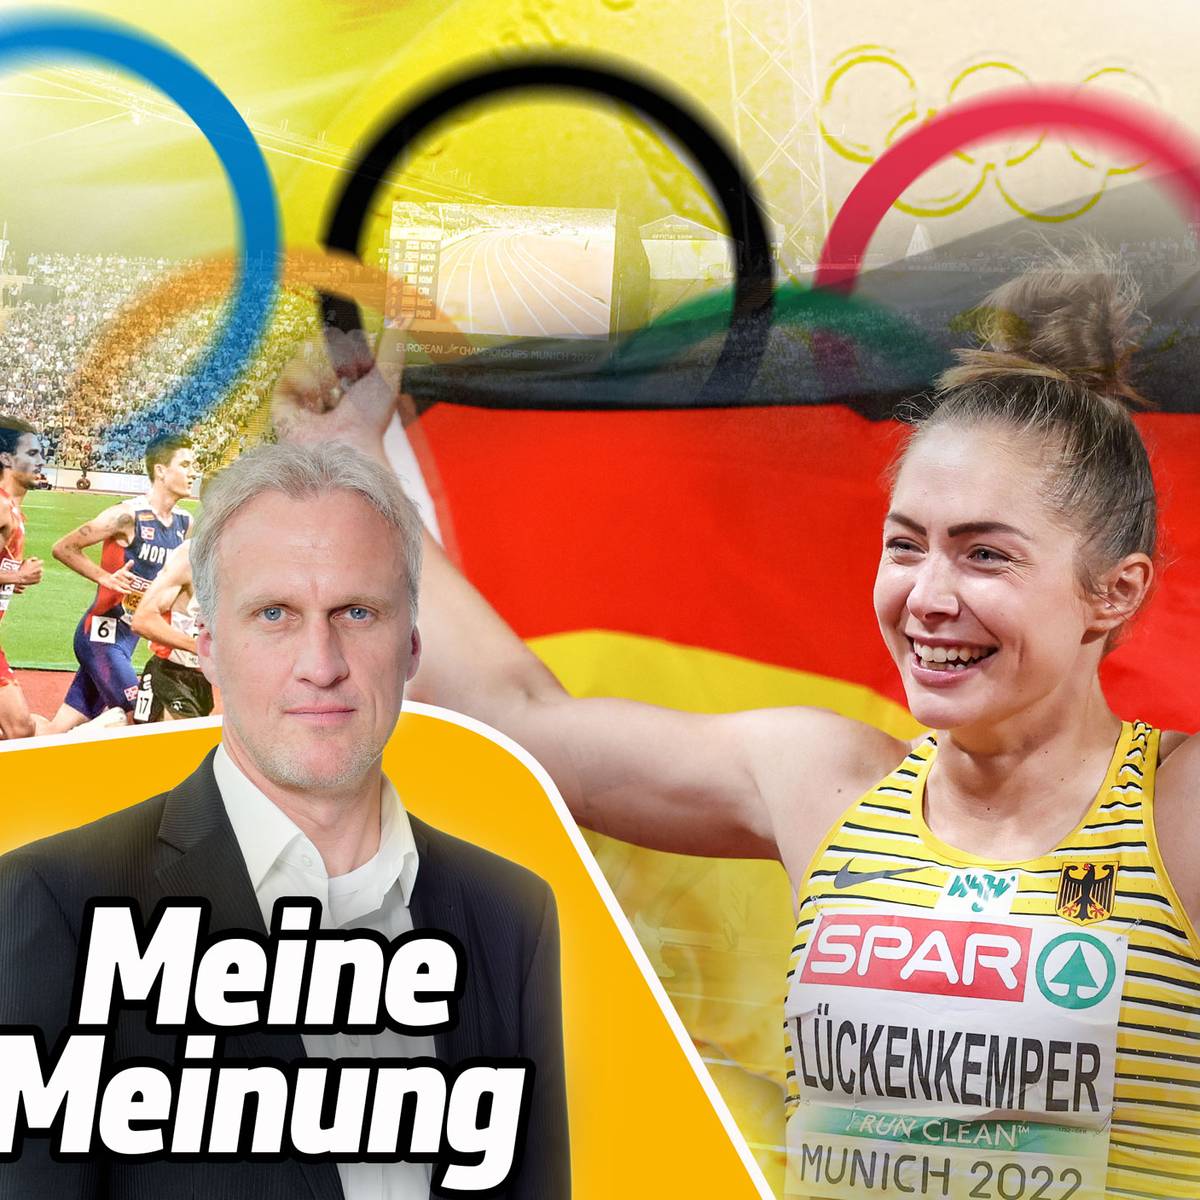 Die European Championships beweisen, dass Deutschland reif für die Austragung der Olympischen Spiele ist. Ein Kommentar von SPORT1-Redakteur Johannes Fischer.